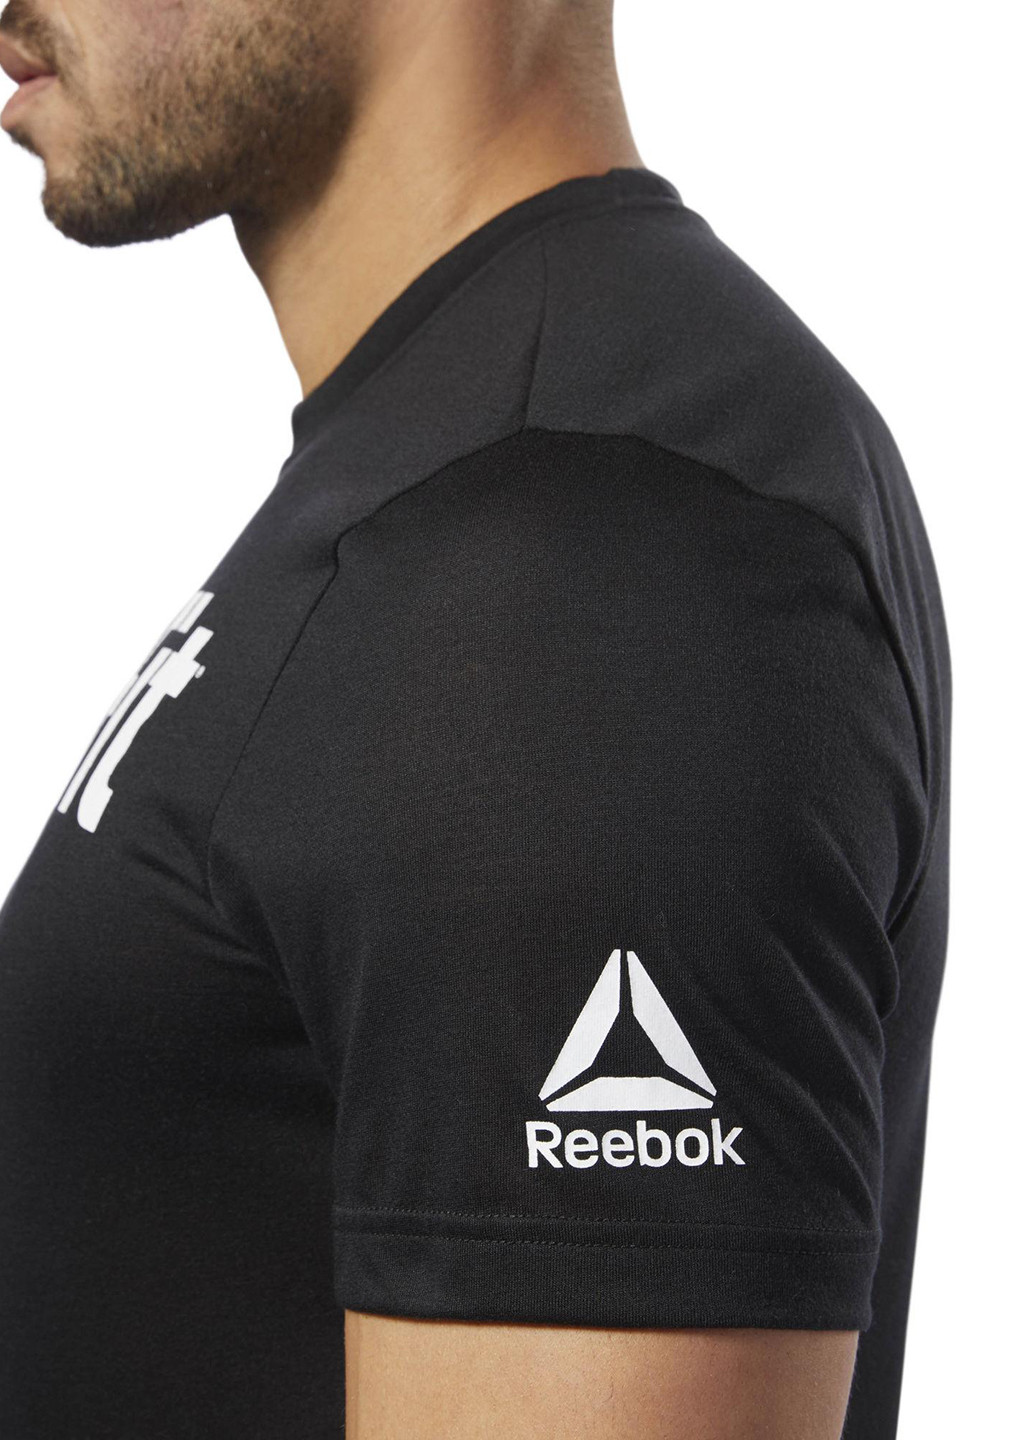 Черная футболка с коротким рукавом Reebok